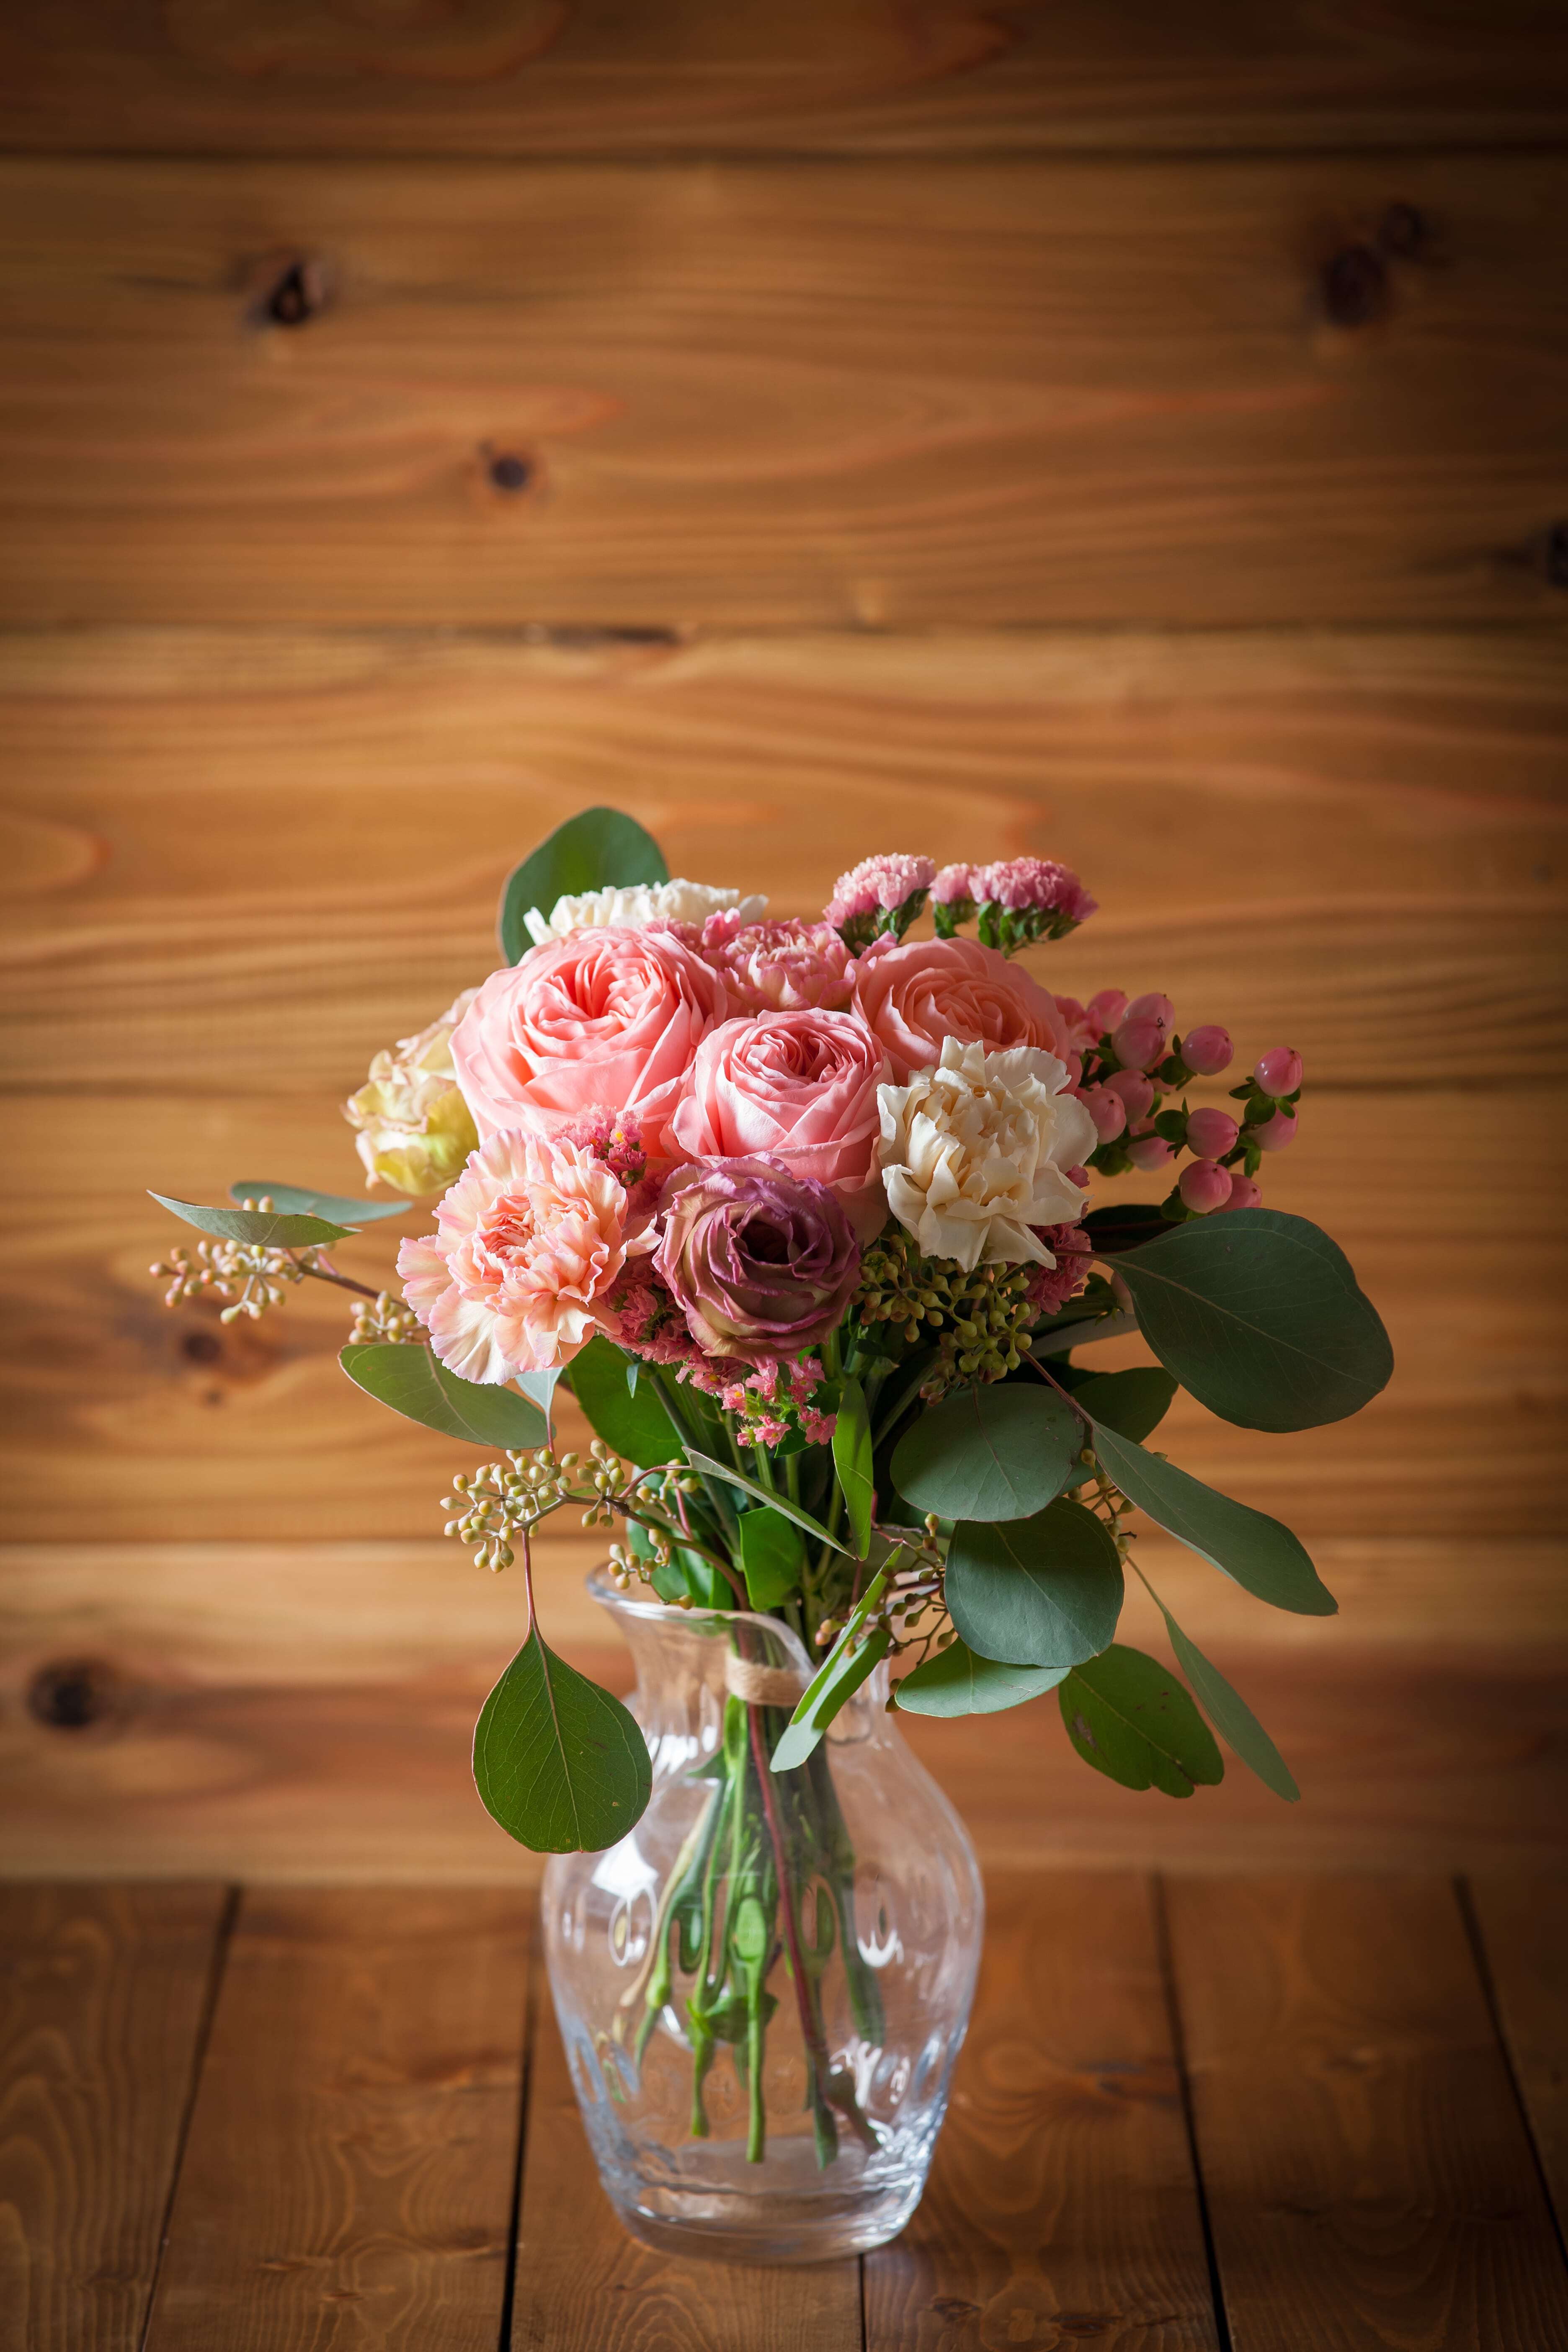 プレゼントにぴったり 花束 ブーケ ピンク 4プラの花屋hug Flowers 通販サイト 花のプレゼント ギフトフラワー 北海道 東北地方送料無料